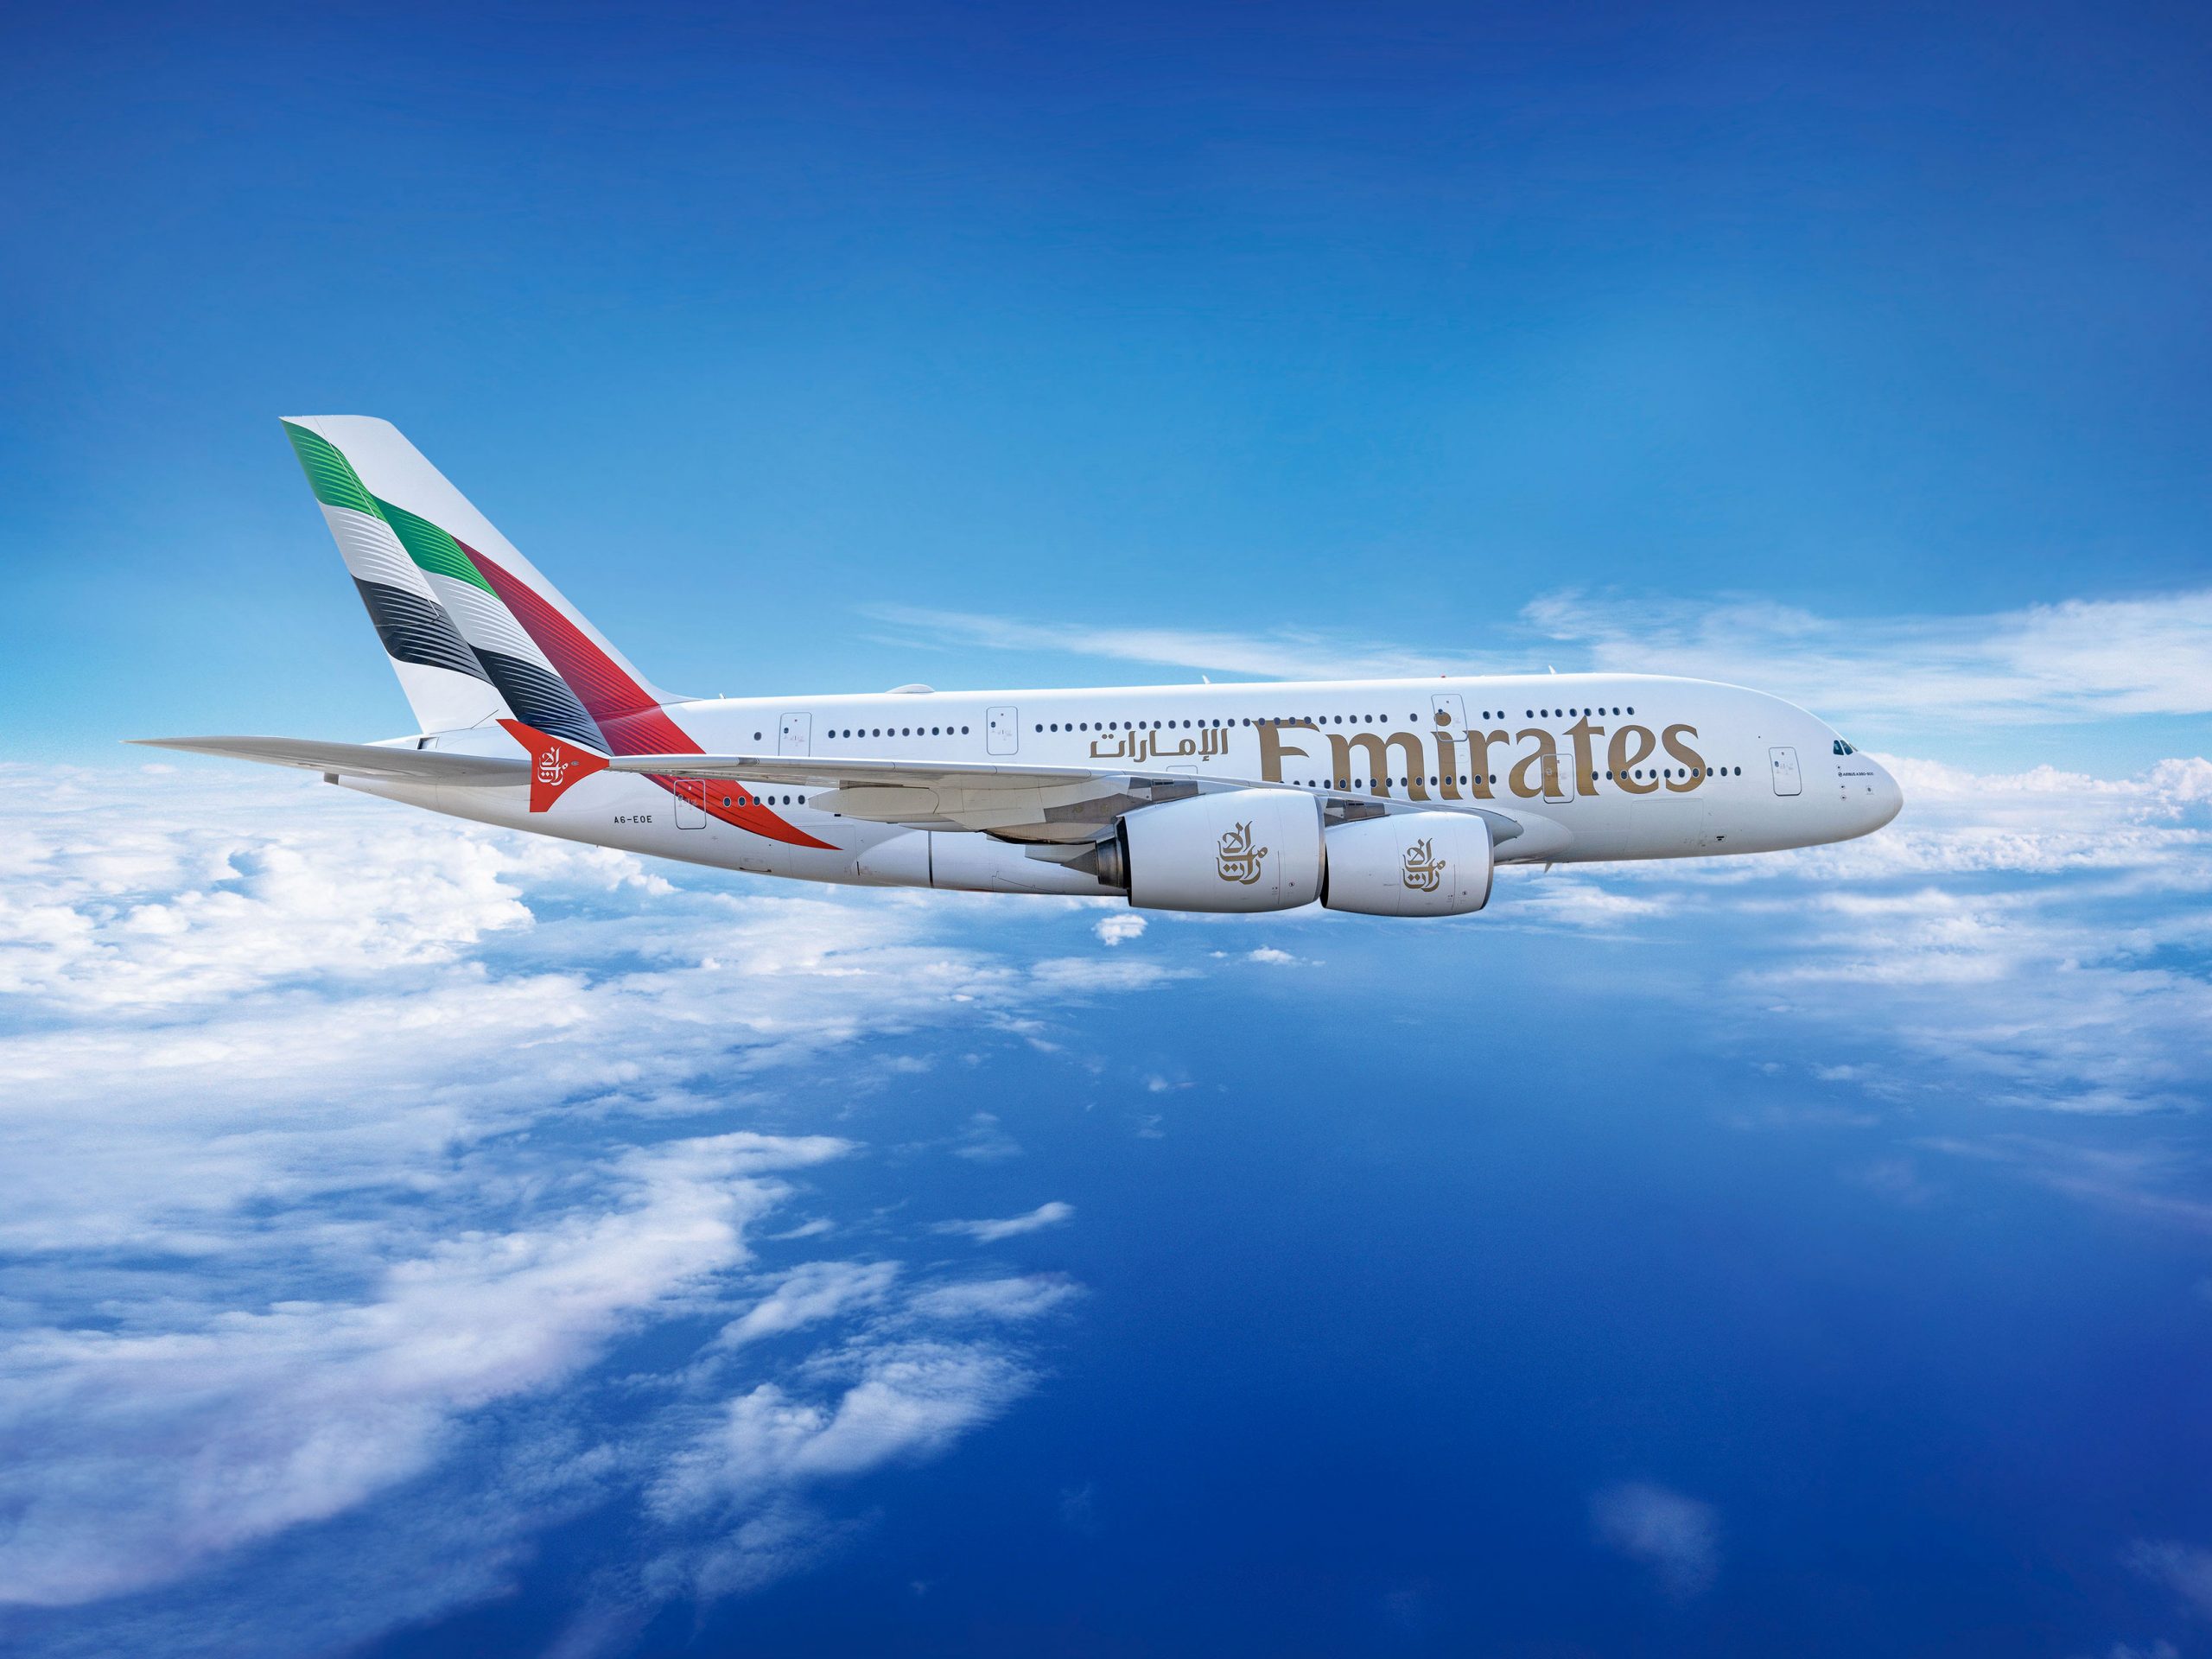 Emirates célèbre le lancement de sa Premium Economy à São Paulo 1 Air Journal